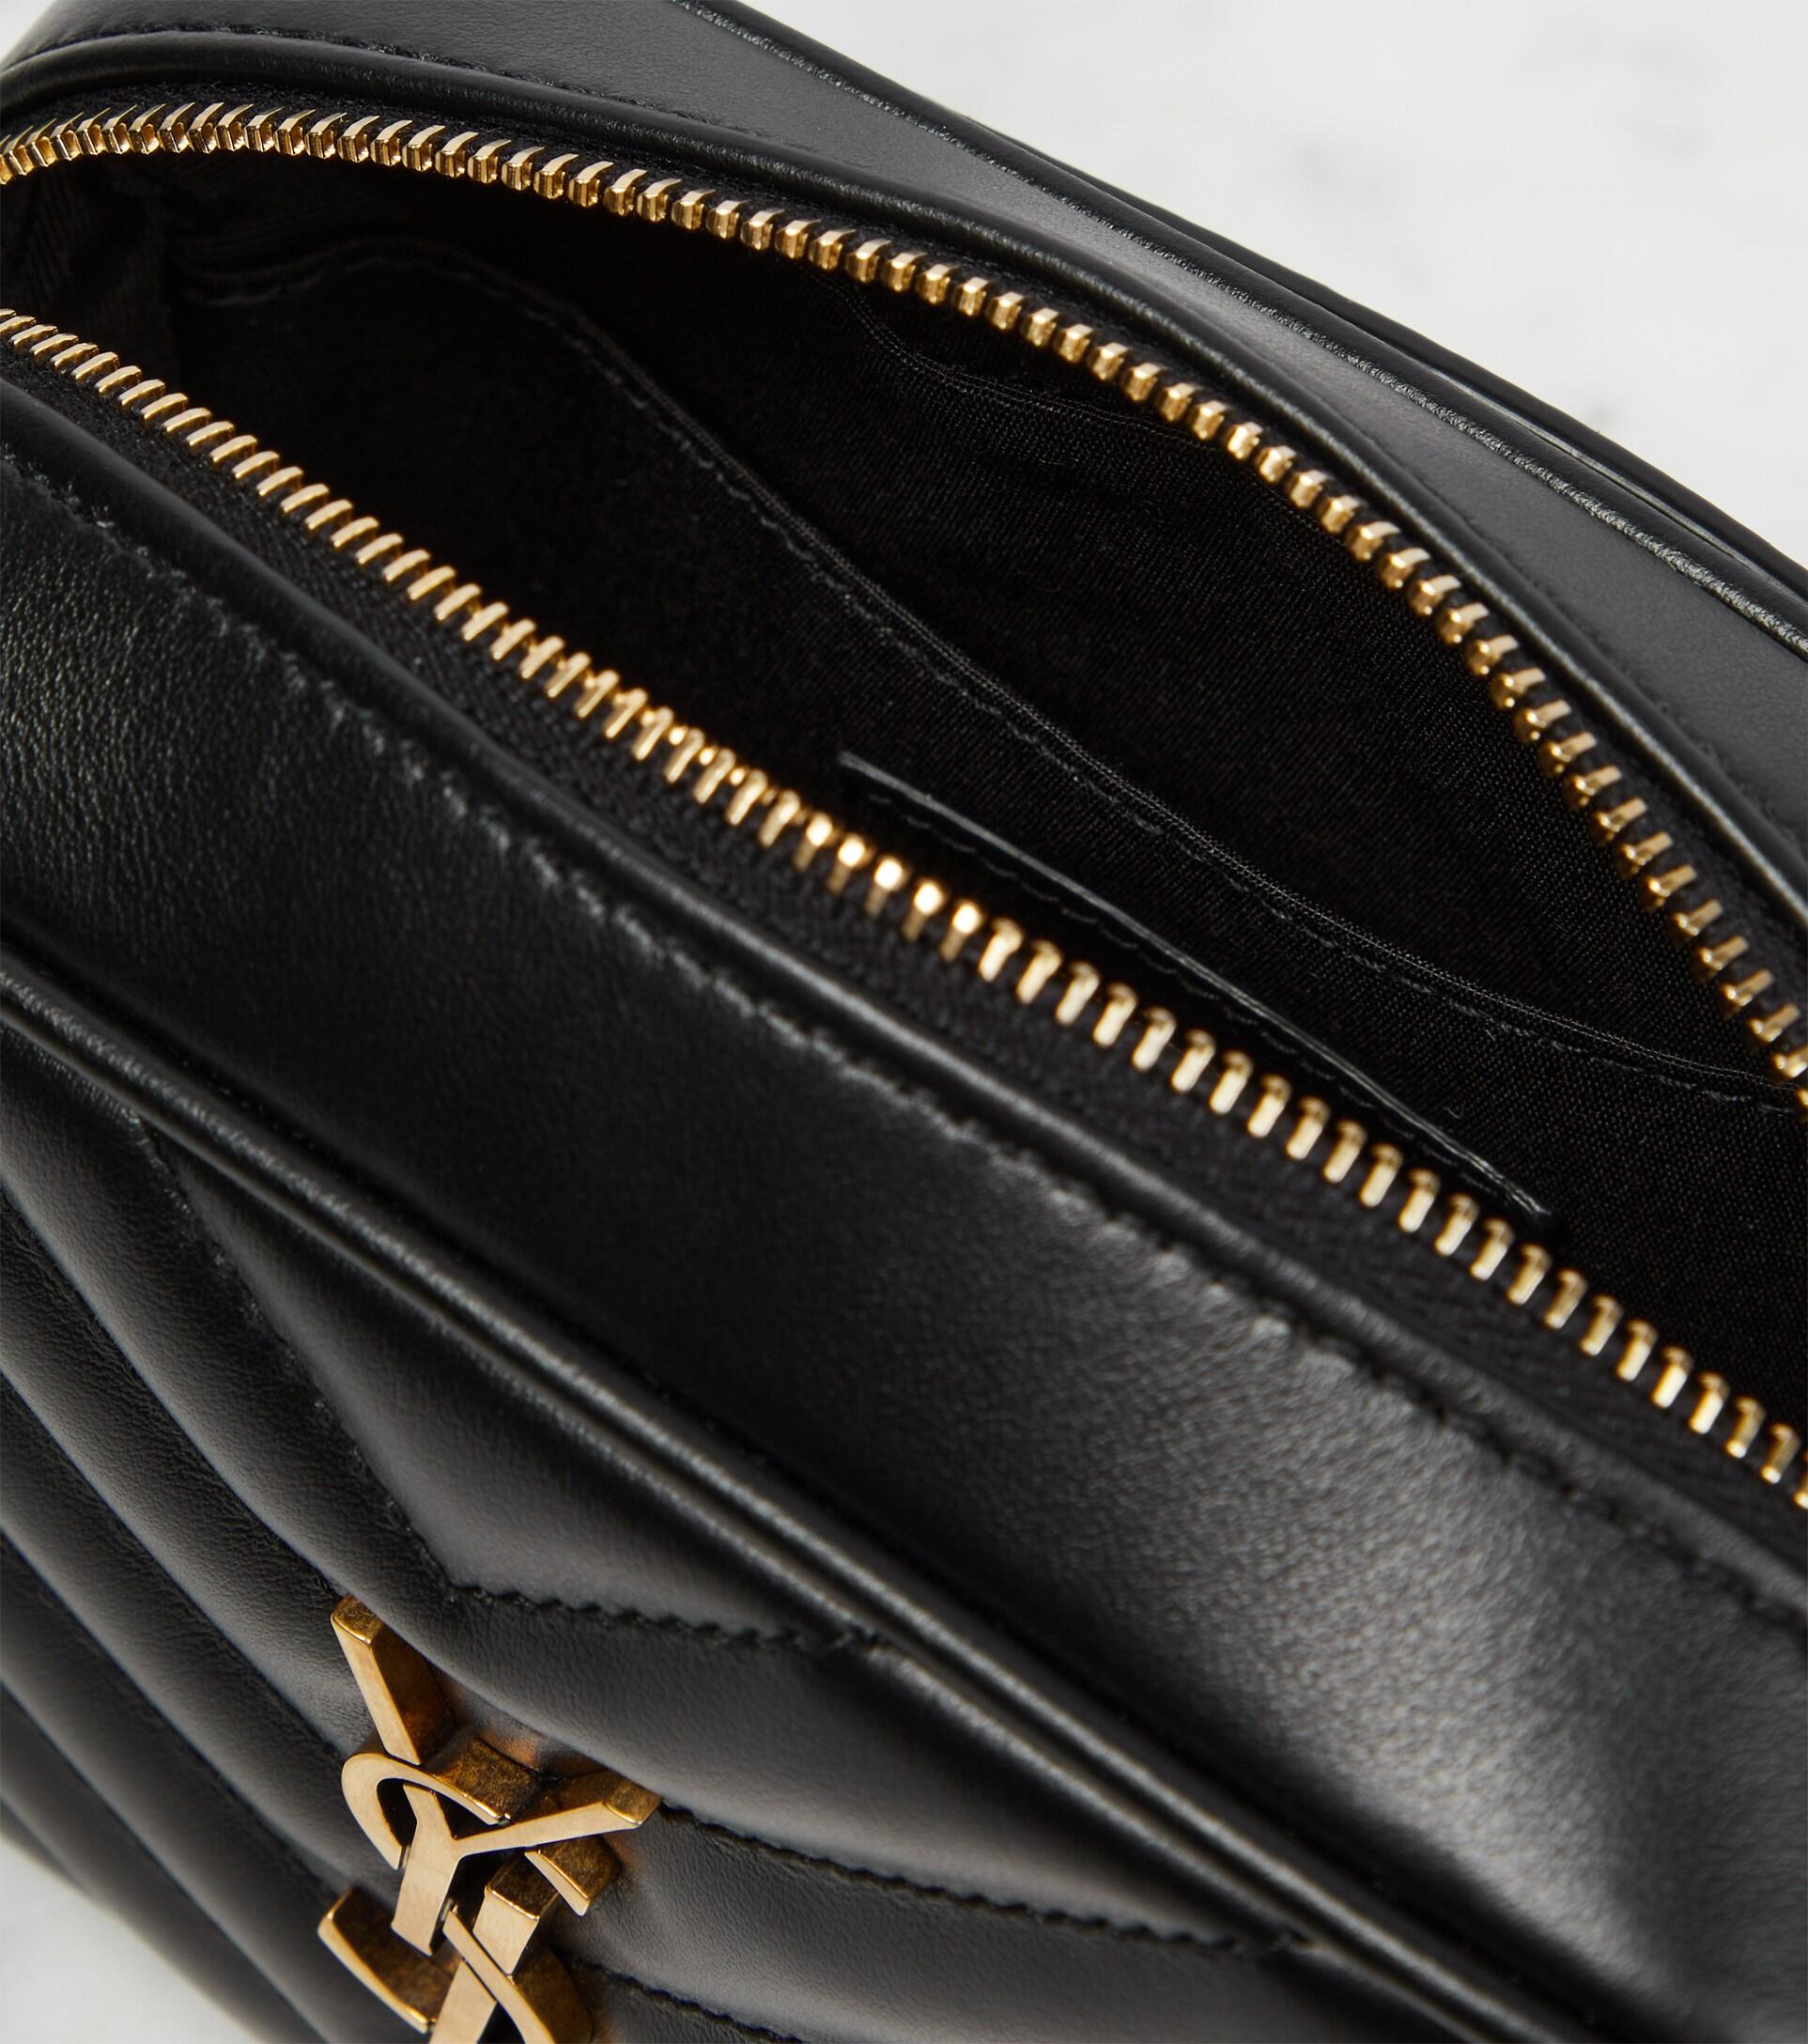 Saint Laurent Quilted Leather Lou Lou Belt Bag - Black Waist Bags, Handbags  - SNT64483